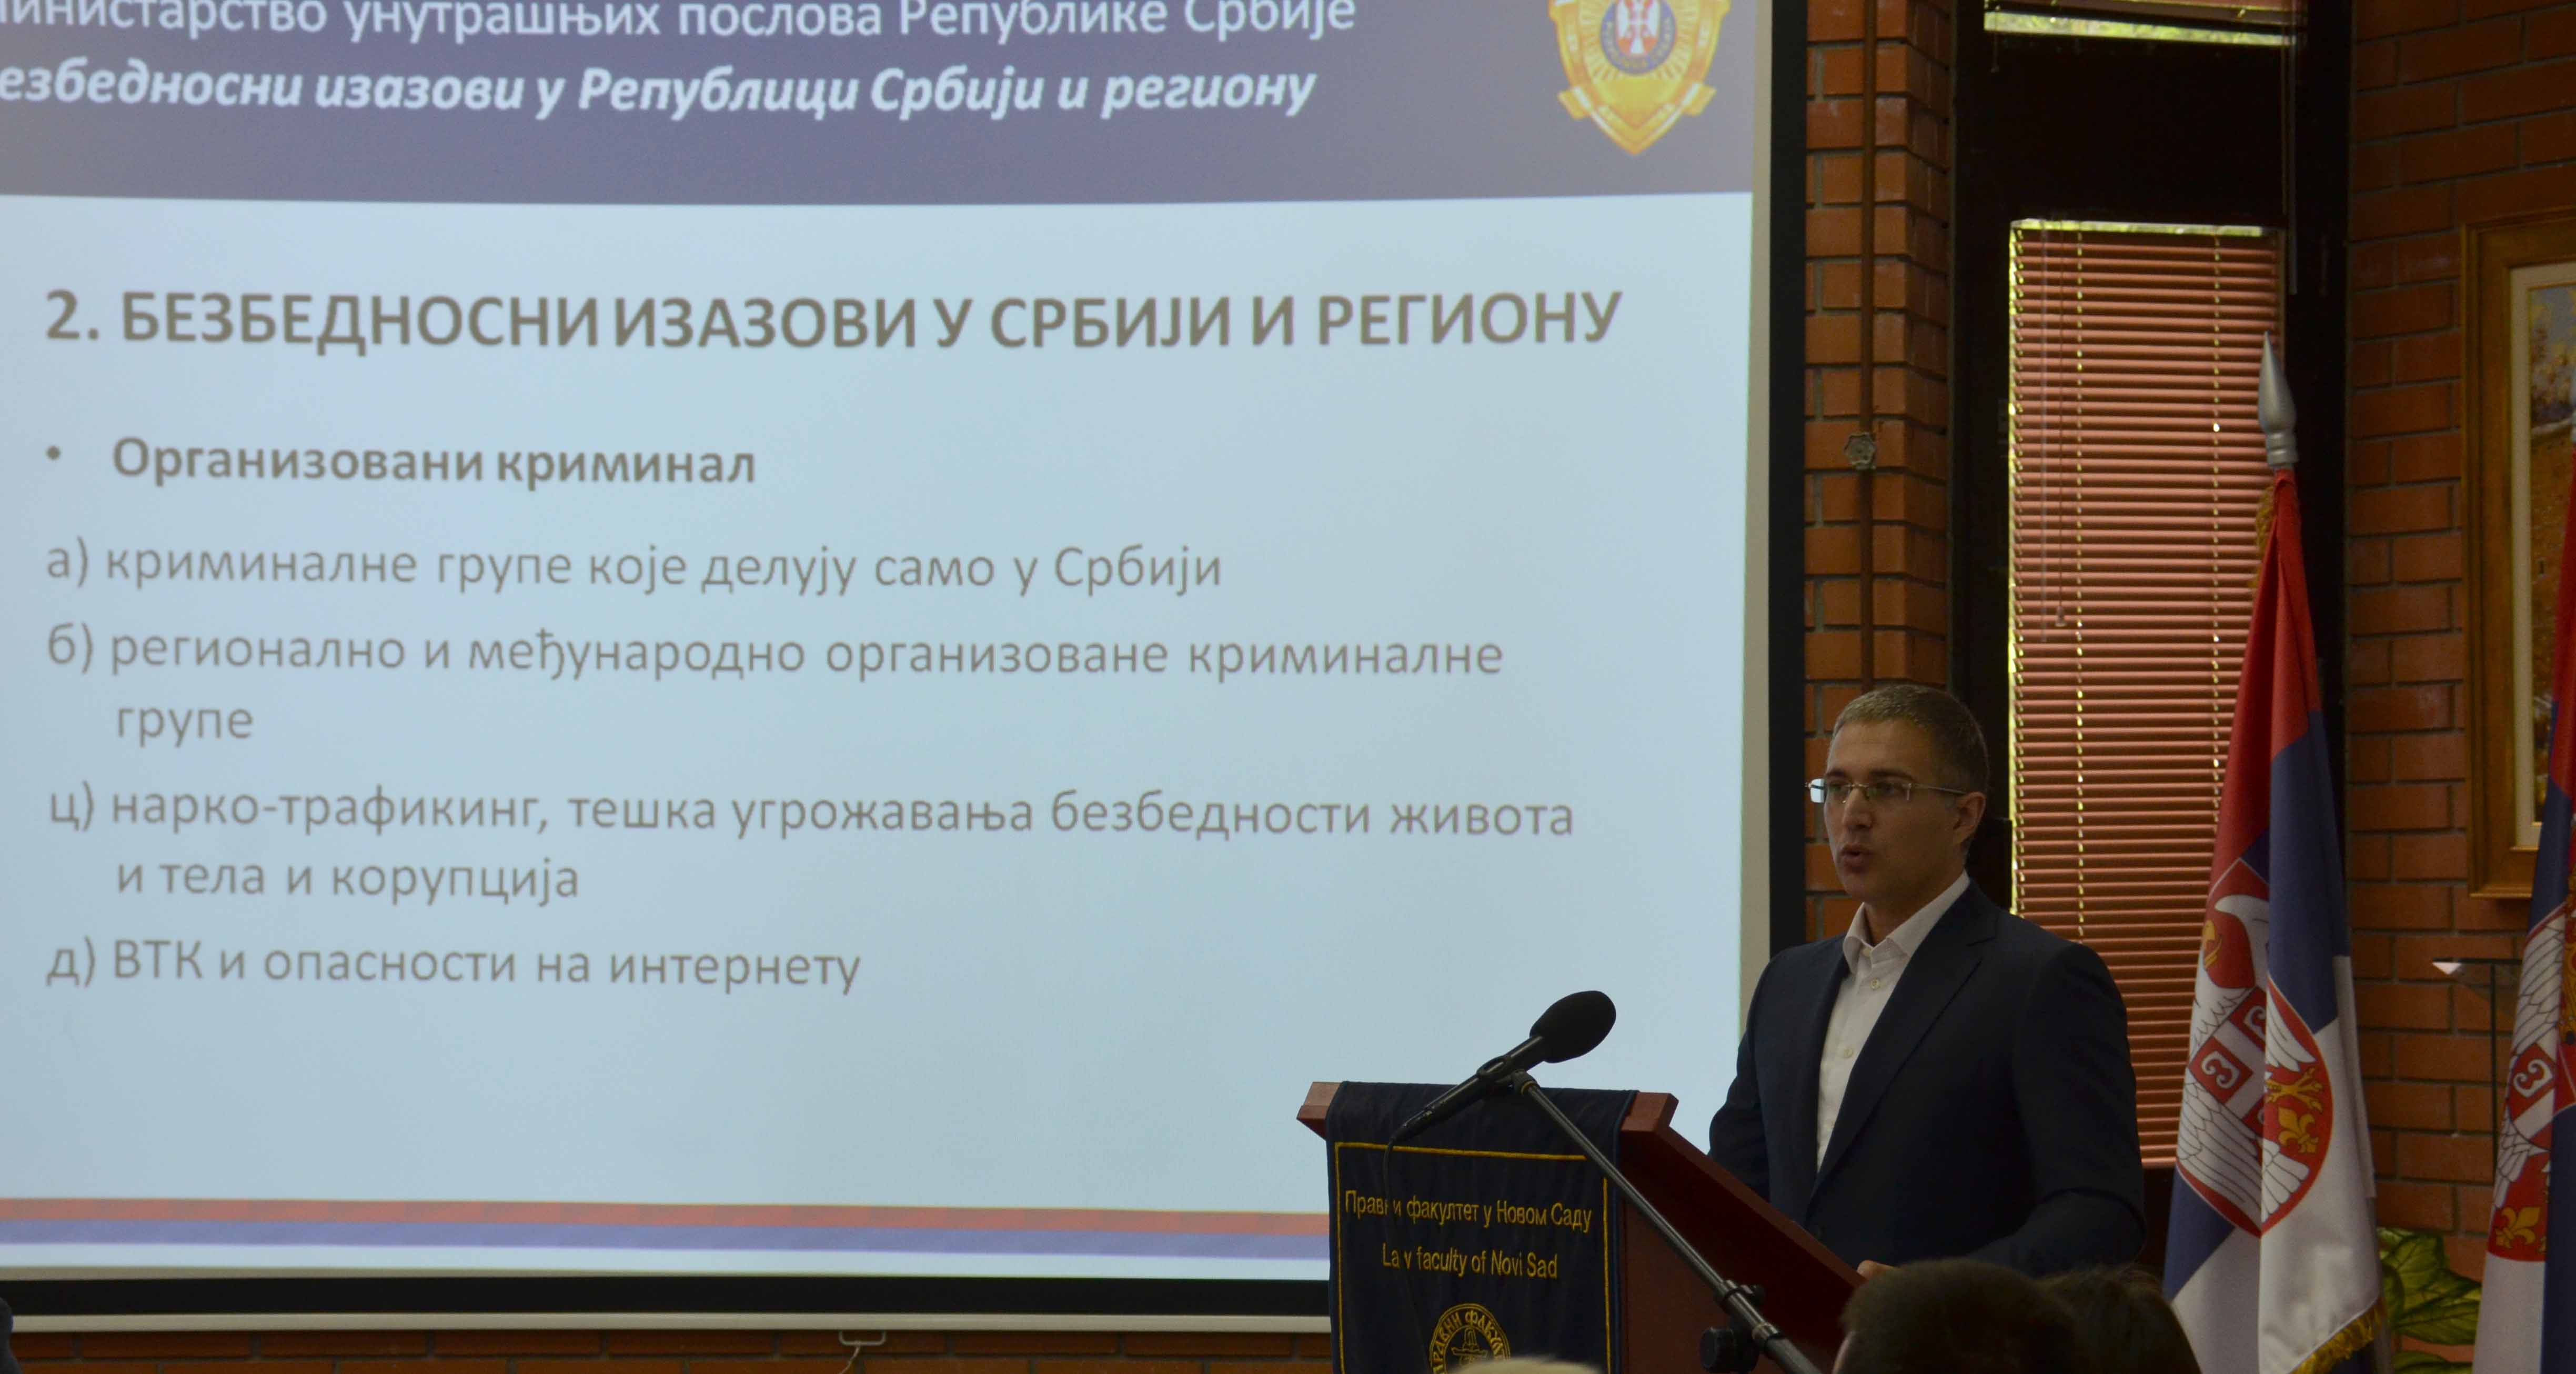 У Србији не постоји ни једна организована криминална група која може да угрози безбедност земље